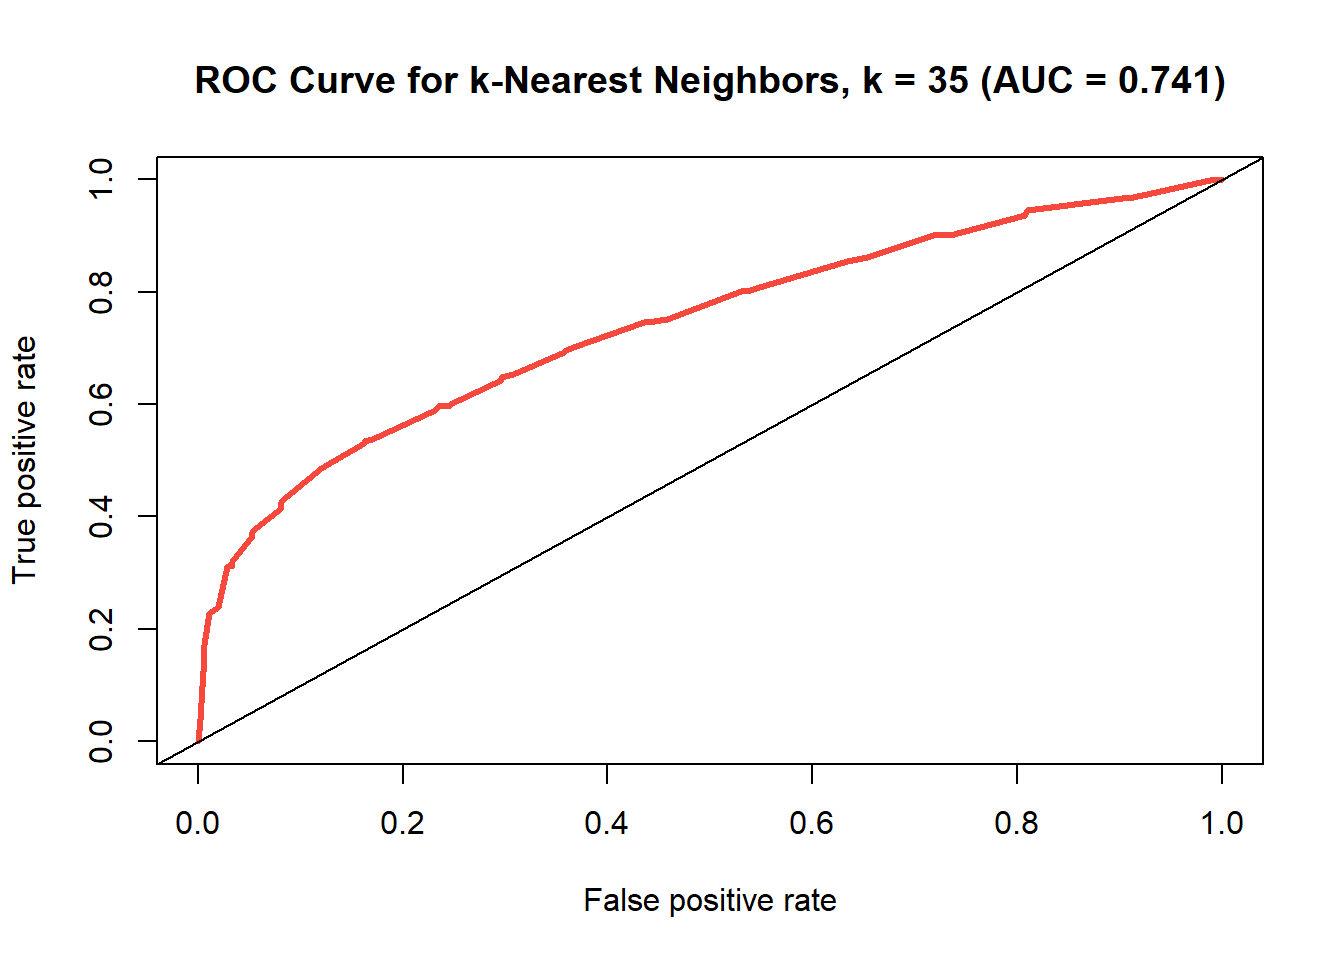 ROC curve for k-nearest neighbors model where k=35